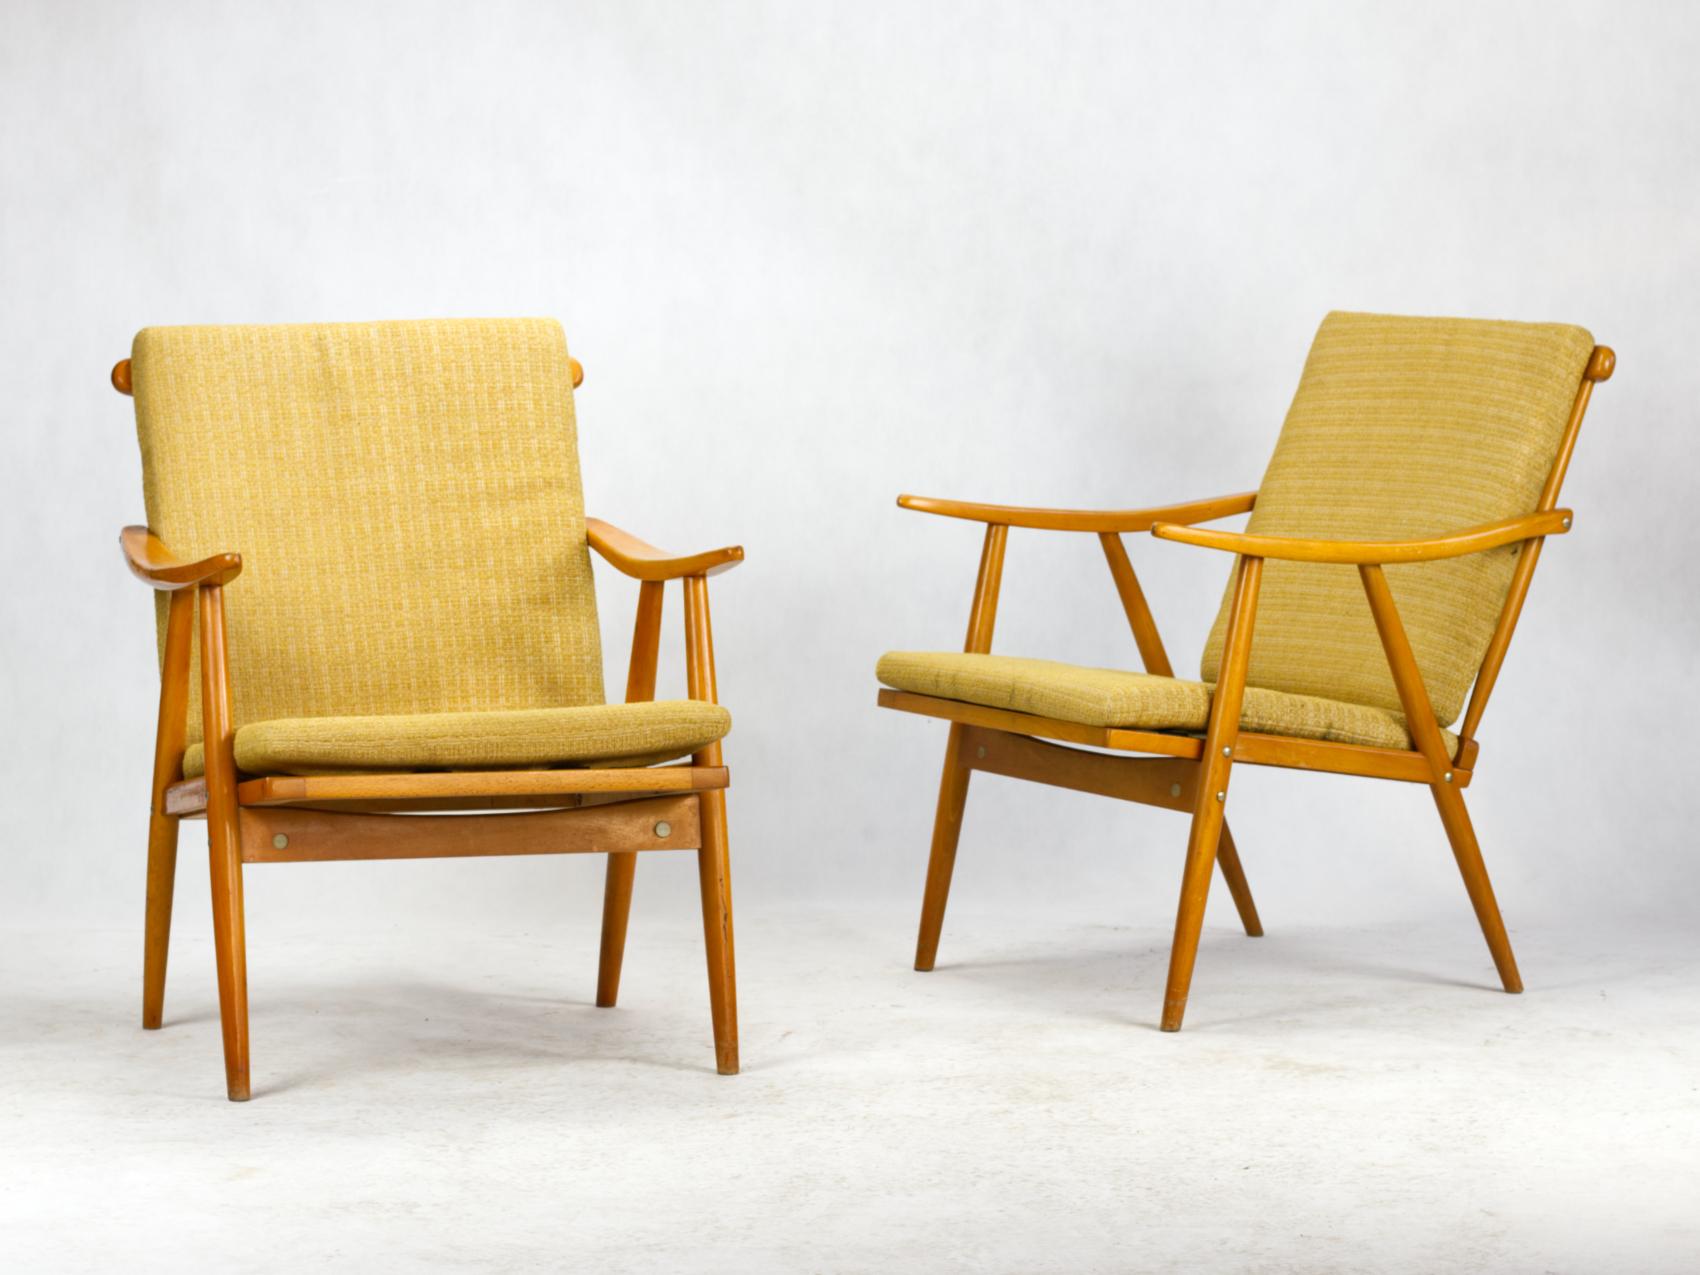 Diese Stühle wurden in den 1960er Jahren von dem renommierten tschechoslowakischen Hersteller TON produziert.
Die Stühle sind eindeutig von der skandinavischen Ästhetik inspiriert. Die glatte, organisch geformte Armlehne mit präzisen Details ist